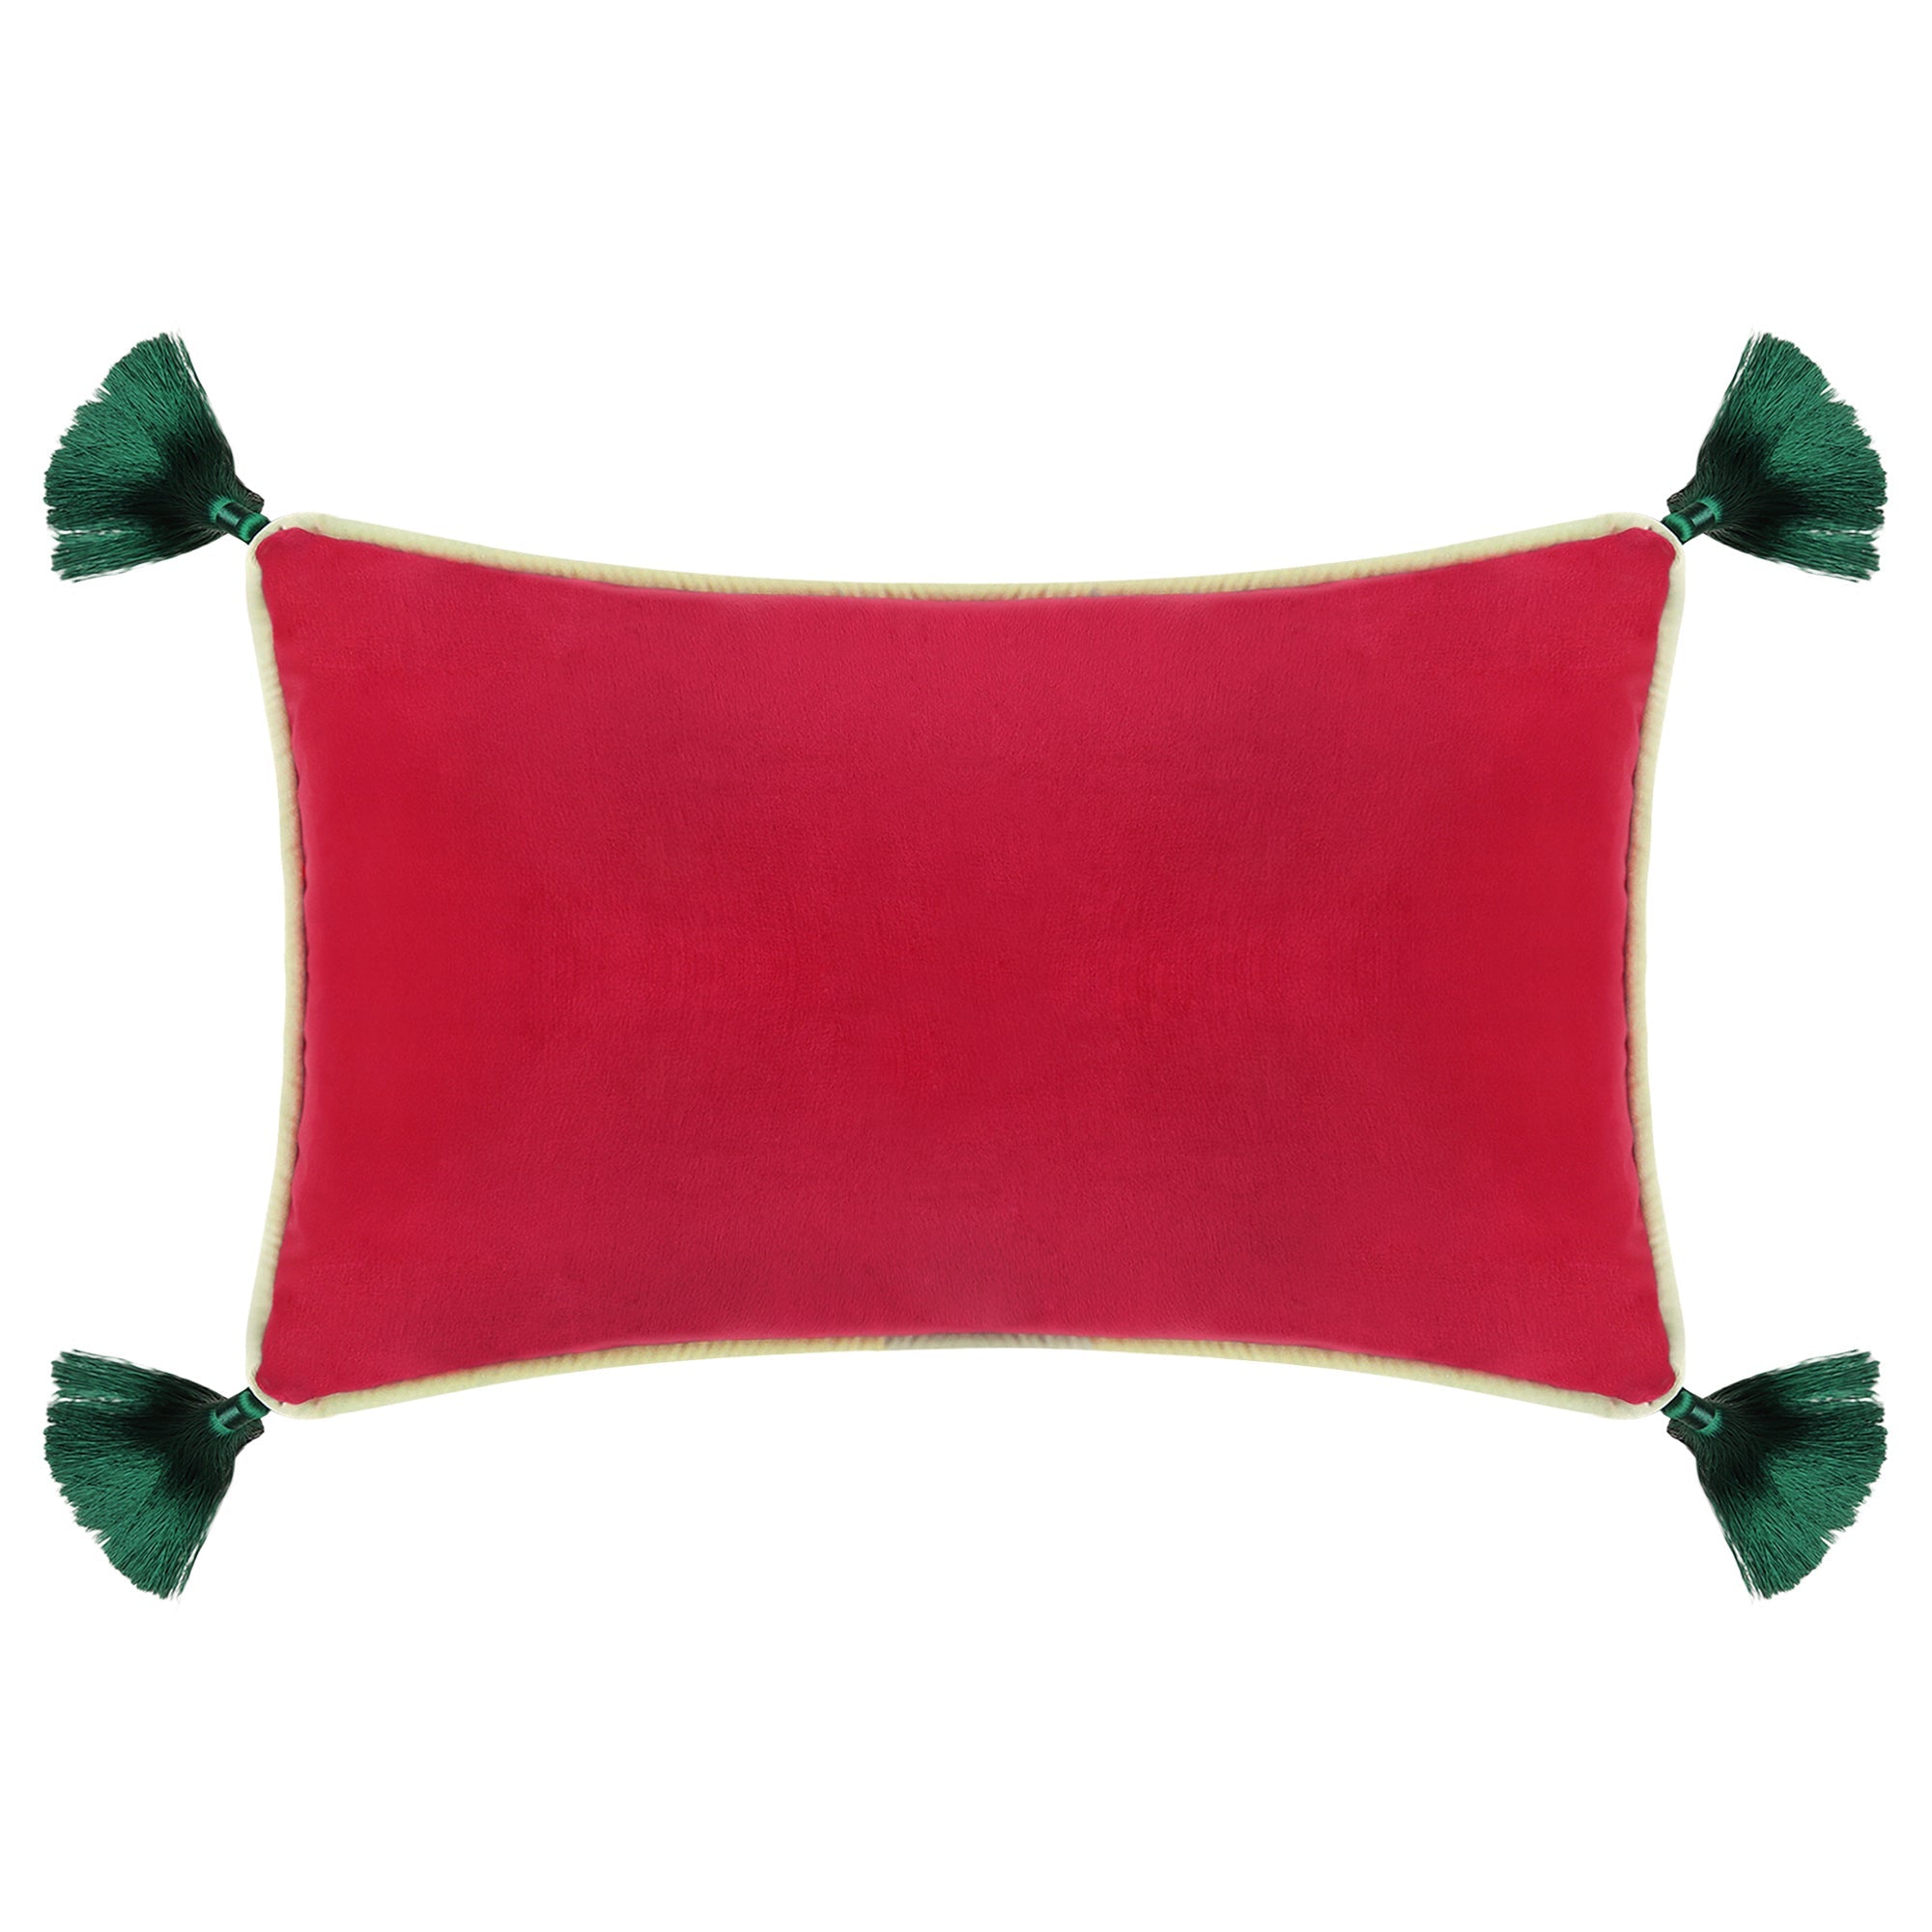 Fuschia Velvet Rectangular Cushion with Tassels